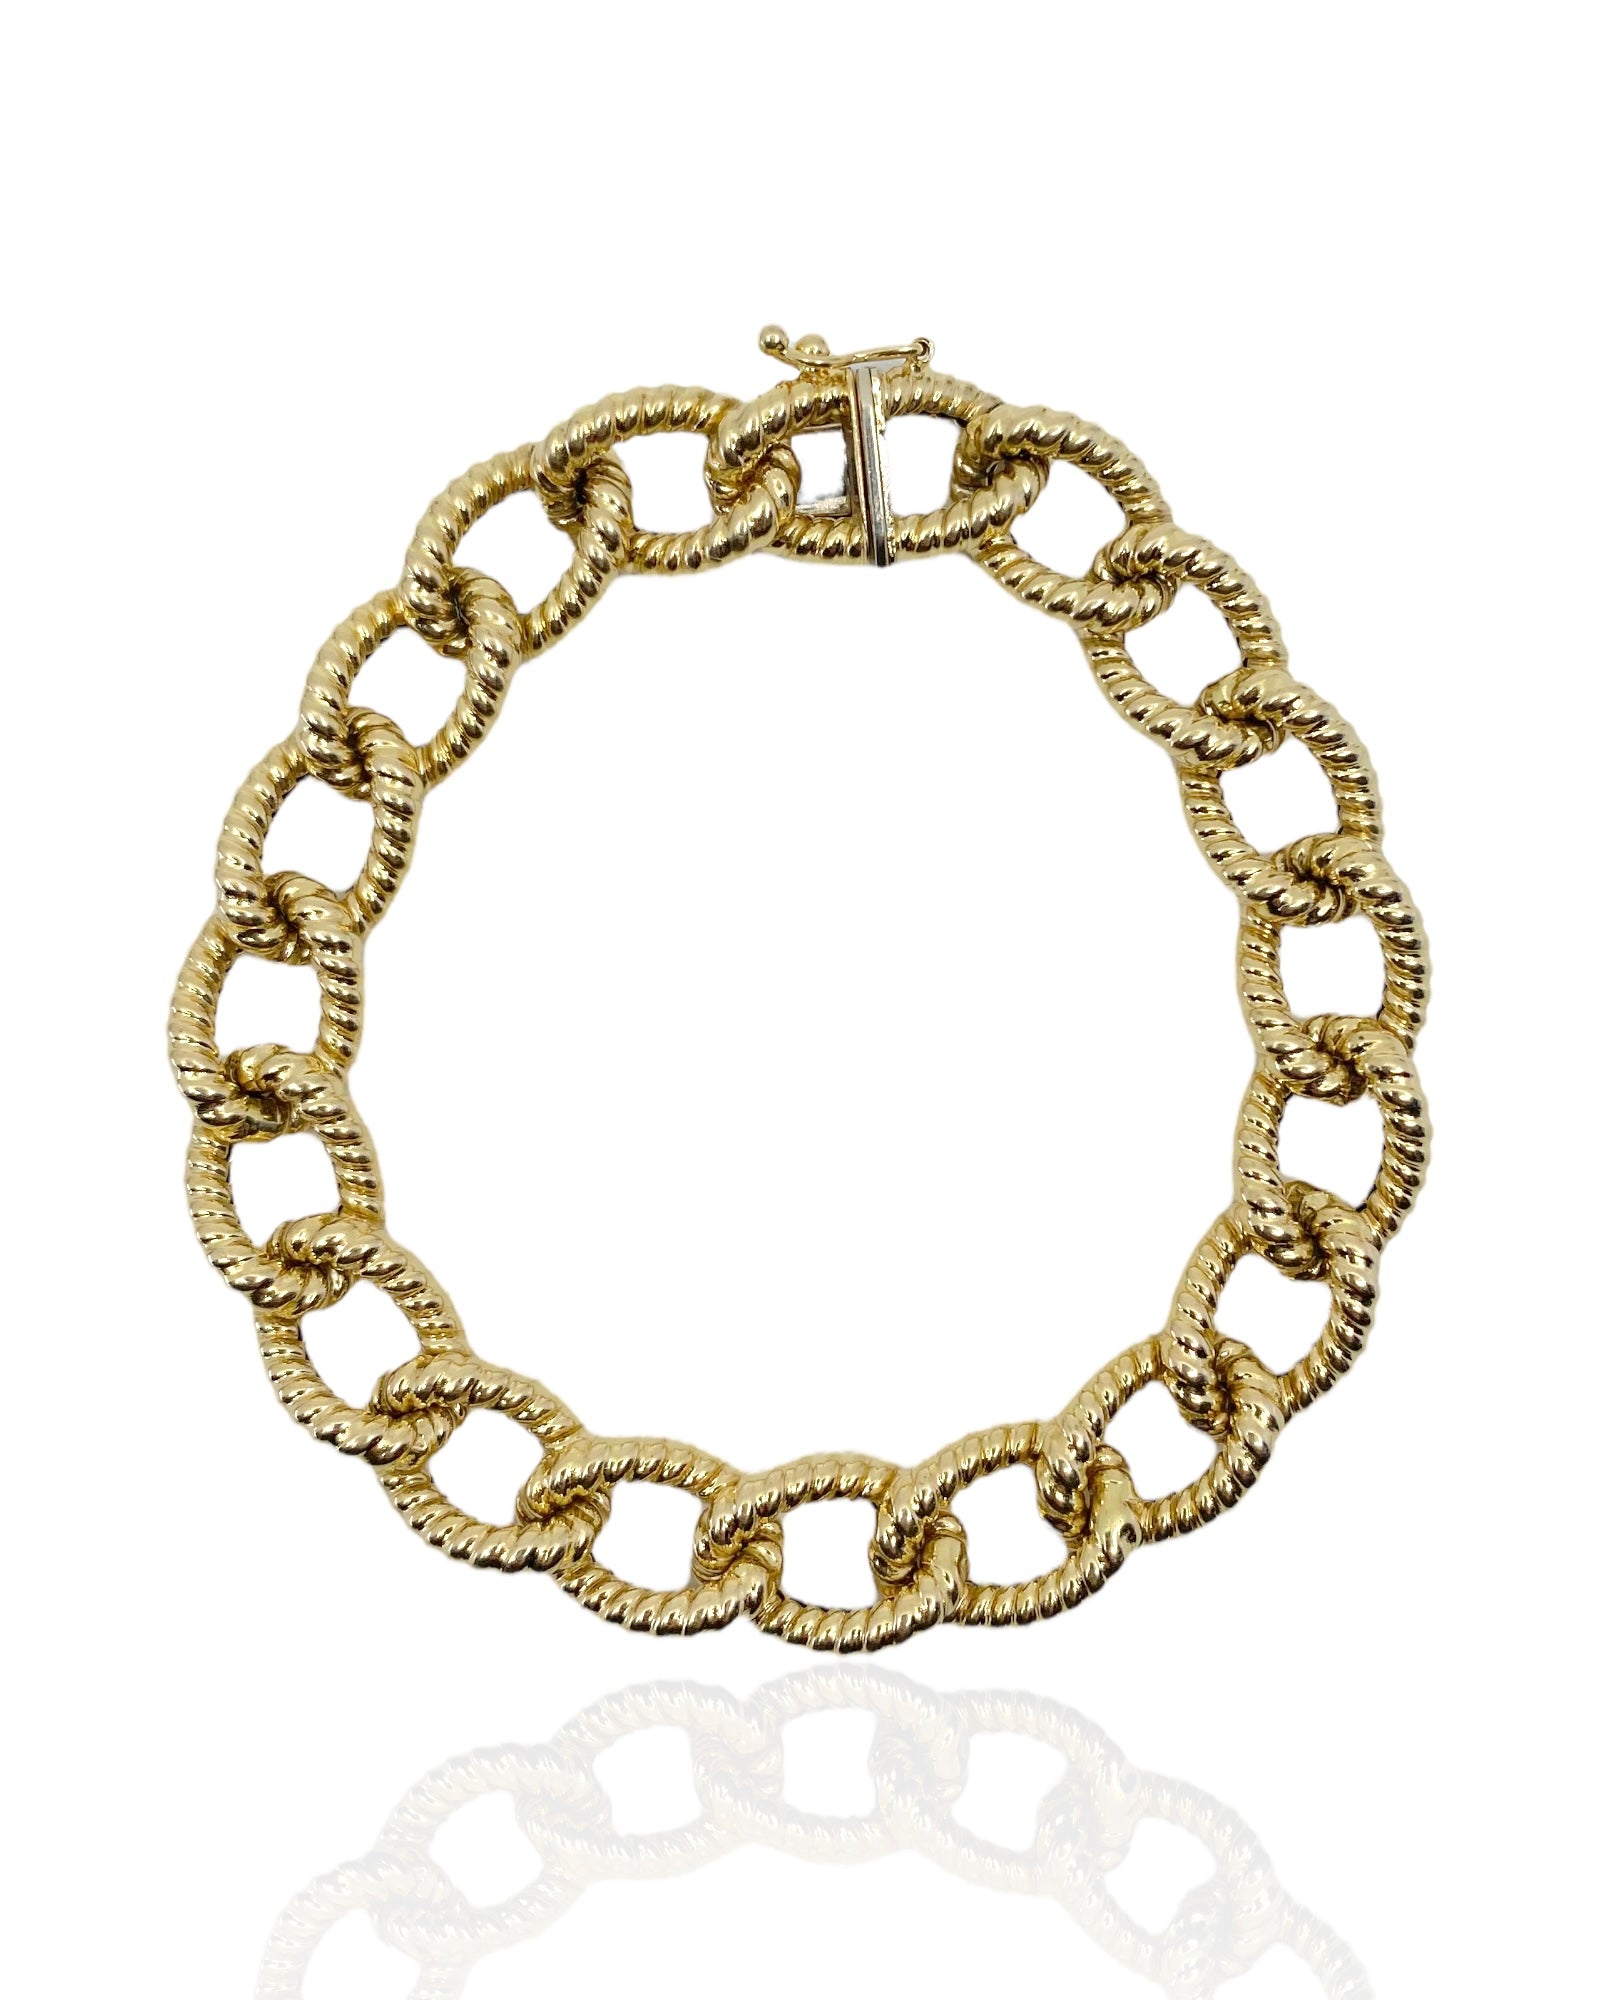 Naivo Hardware Link Bracelet - Gauge Link Bracelet 18K Gold Plated 7.5 inch  U Style Link Bracelet (Gold) : : Clothing, Shoes & Accessories